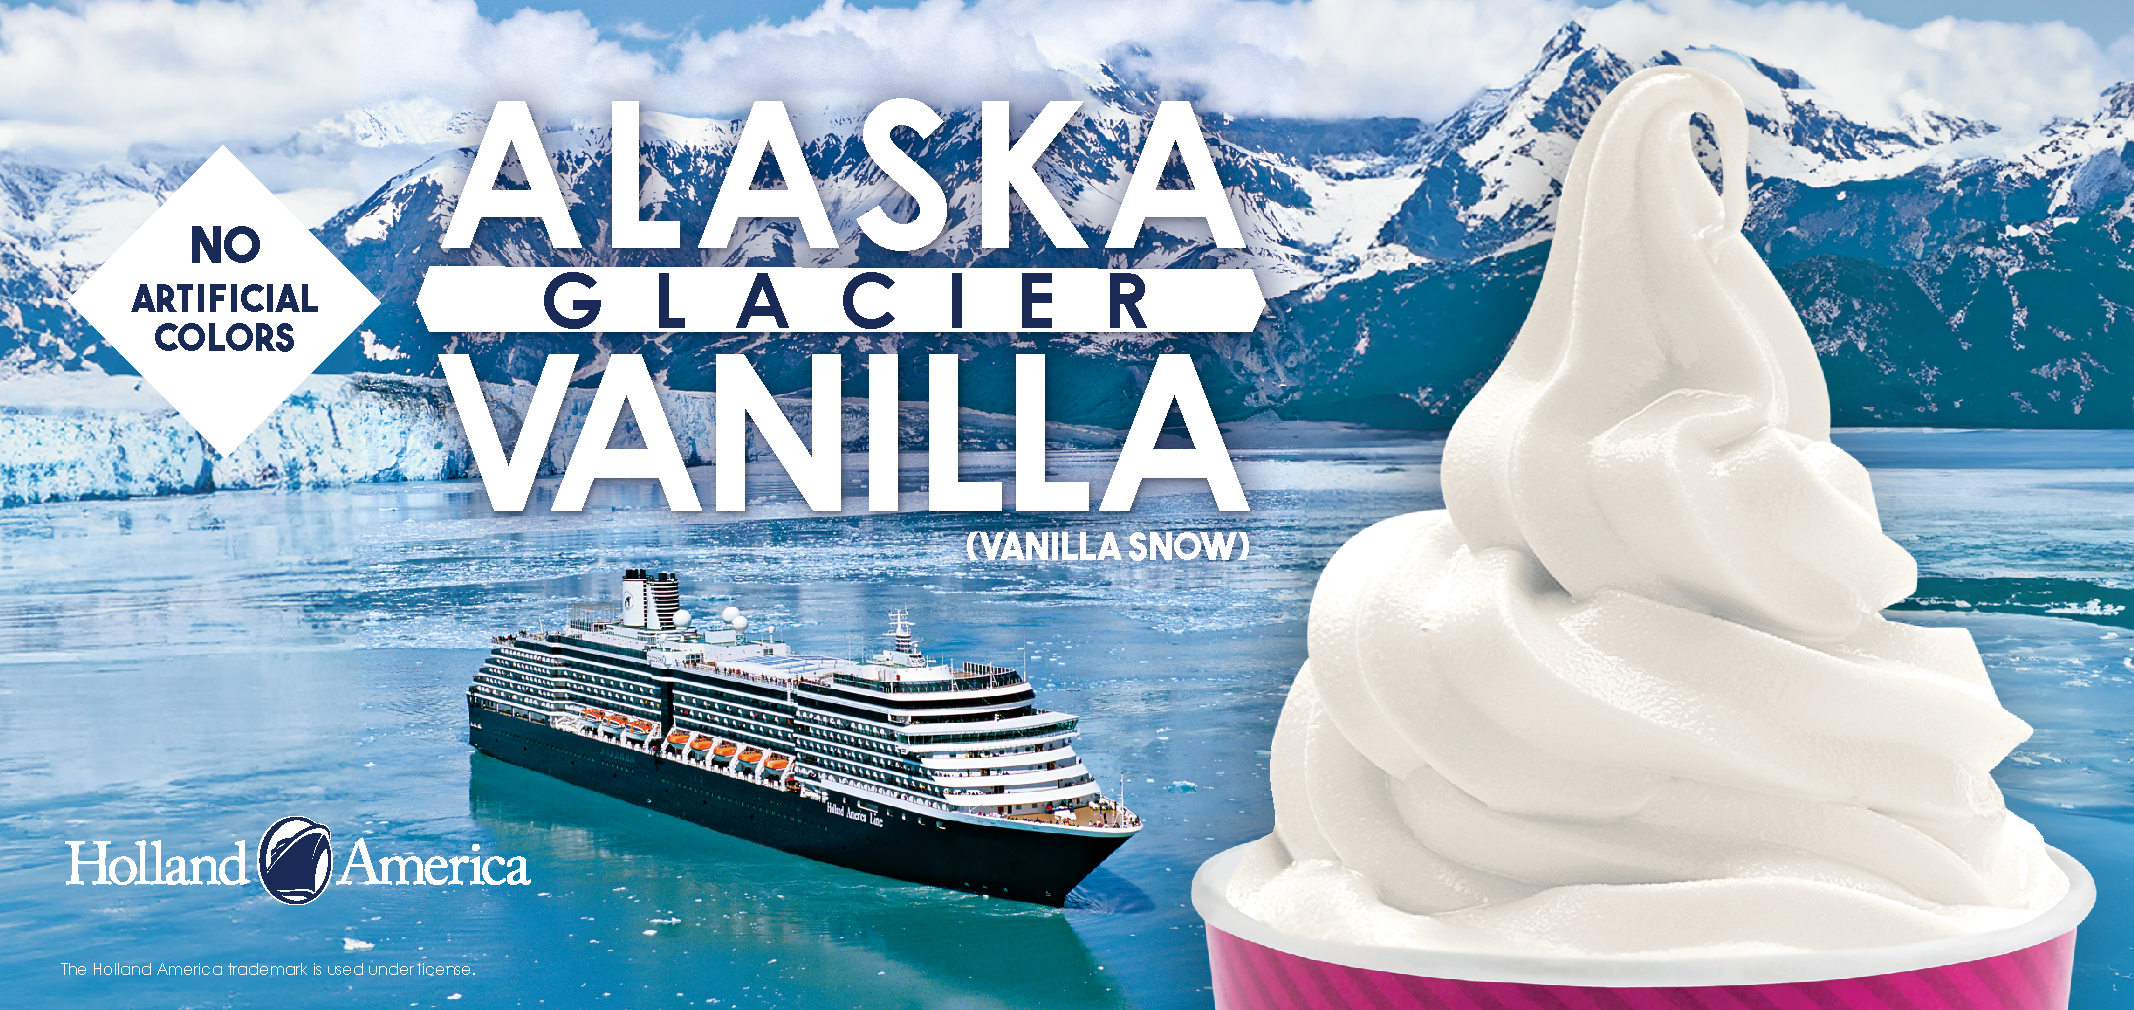 Alaska Glacier Vanilla (Vanilla Snow) label image